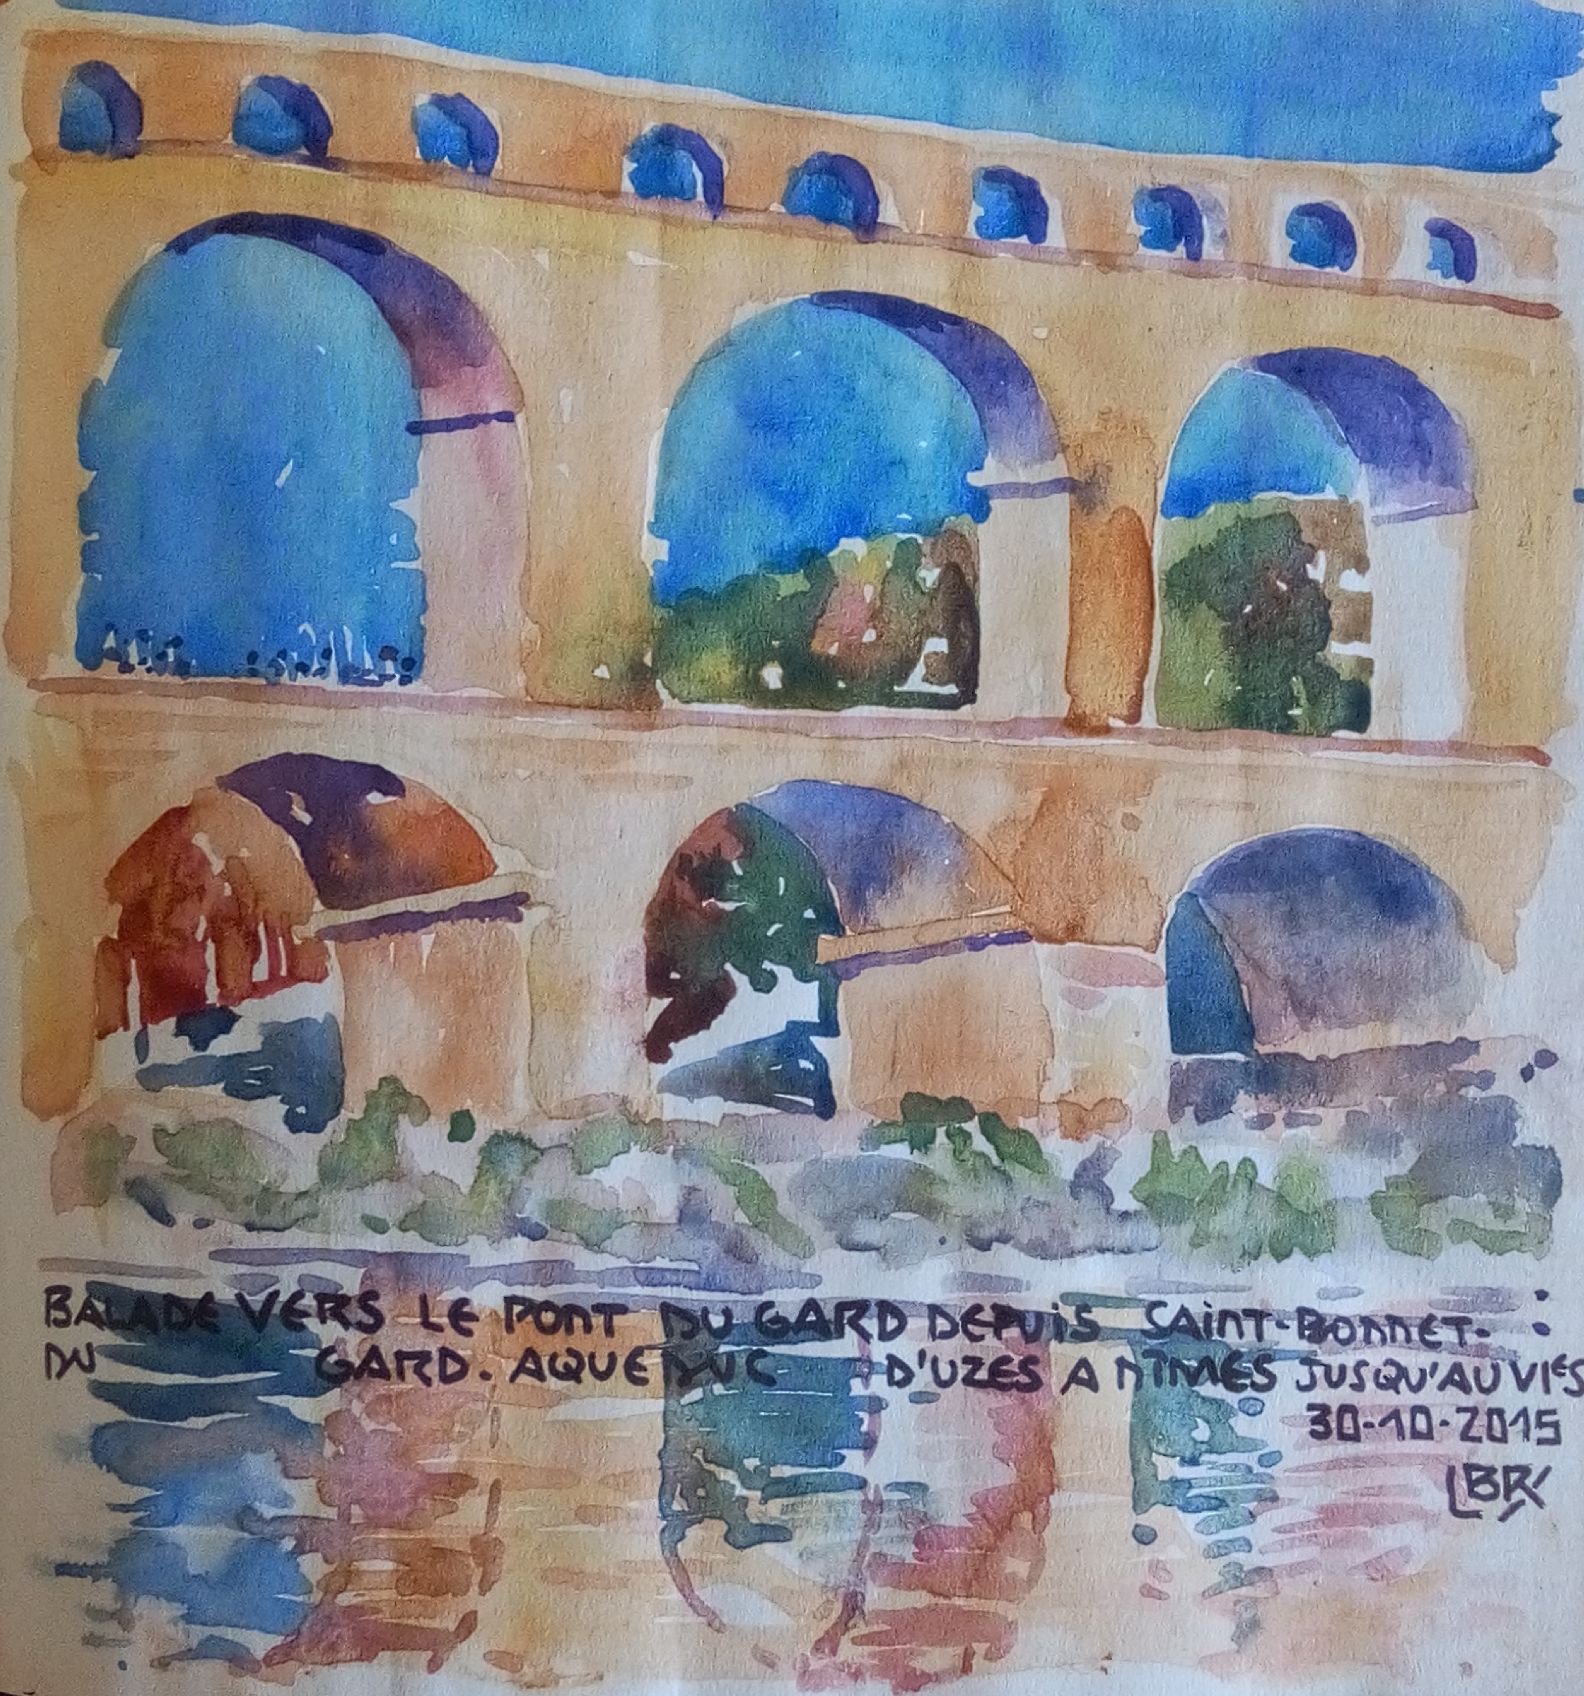 Trois arches du pont du Gard et reflet dans l'eau. Signé BR entre chevrons. Texte : "BALADE VERS LE PONT DU GARD DEPUIS SAINT BONNET DU GARD. AQUEDUC D'UZES A NIMES JUSQU'AU VIe S 30.10.2015".